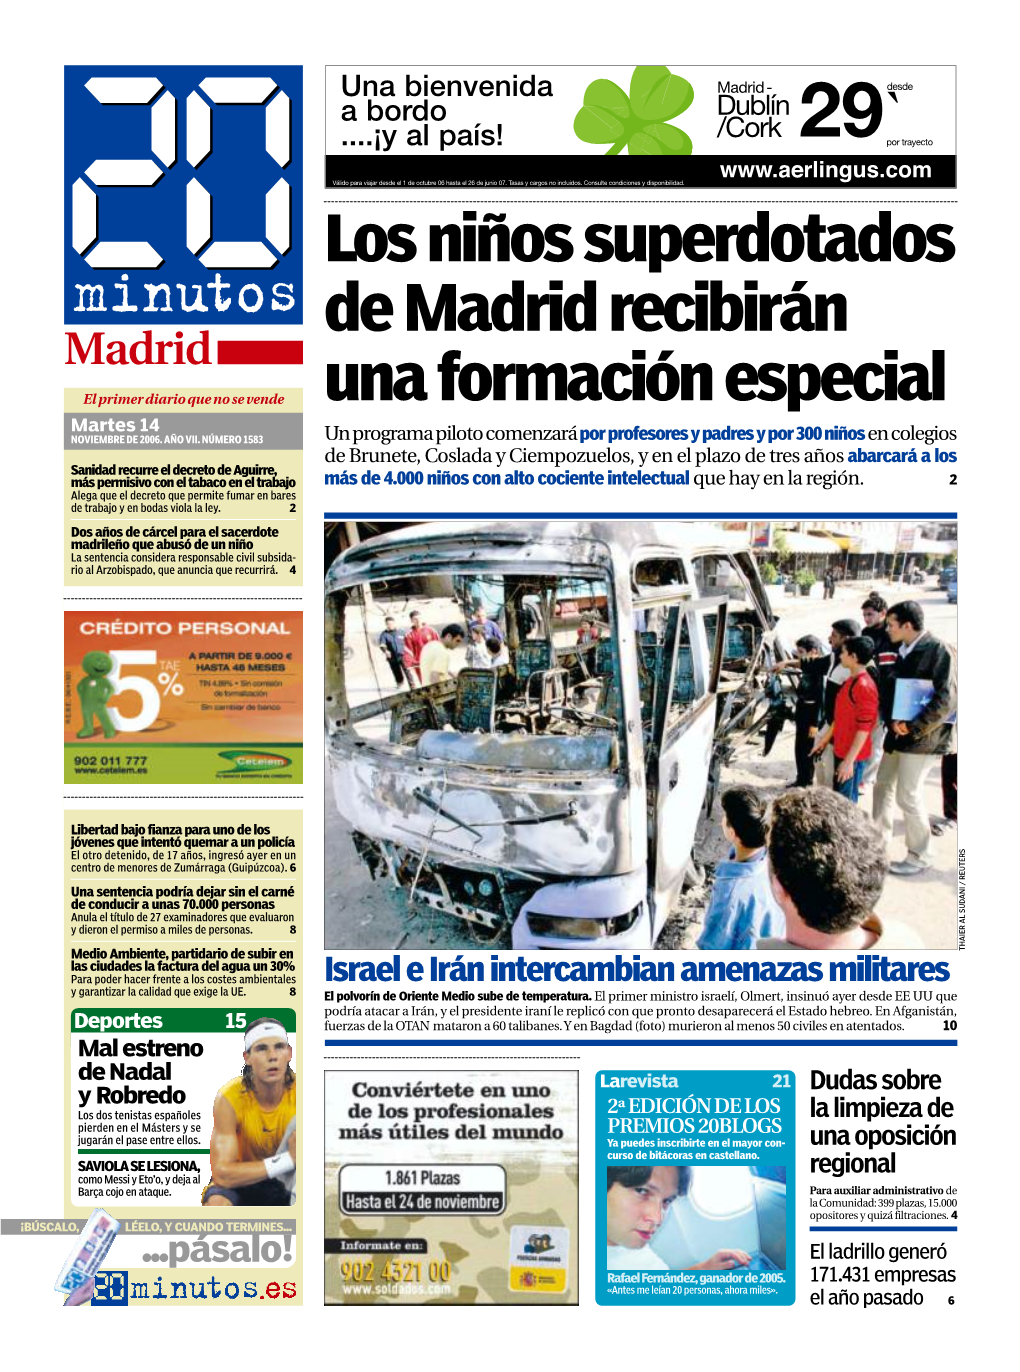 Los Niños Superdotados De Madrid Recibirán Una Formación Especial